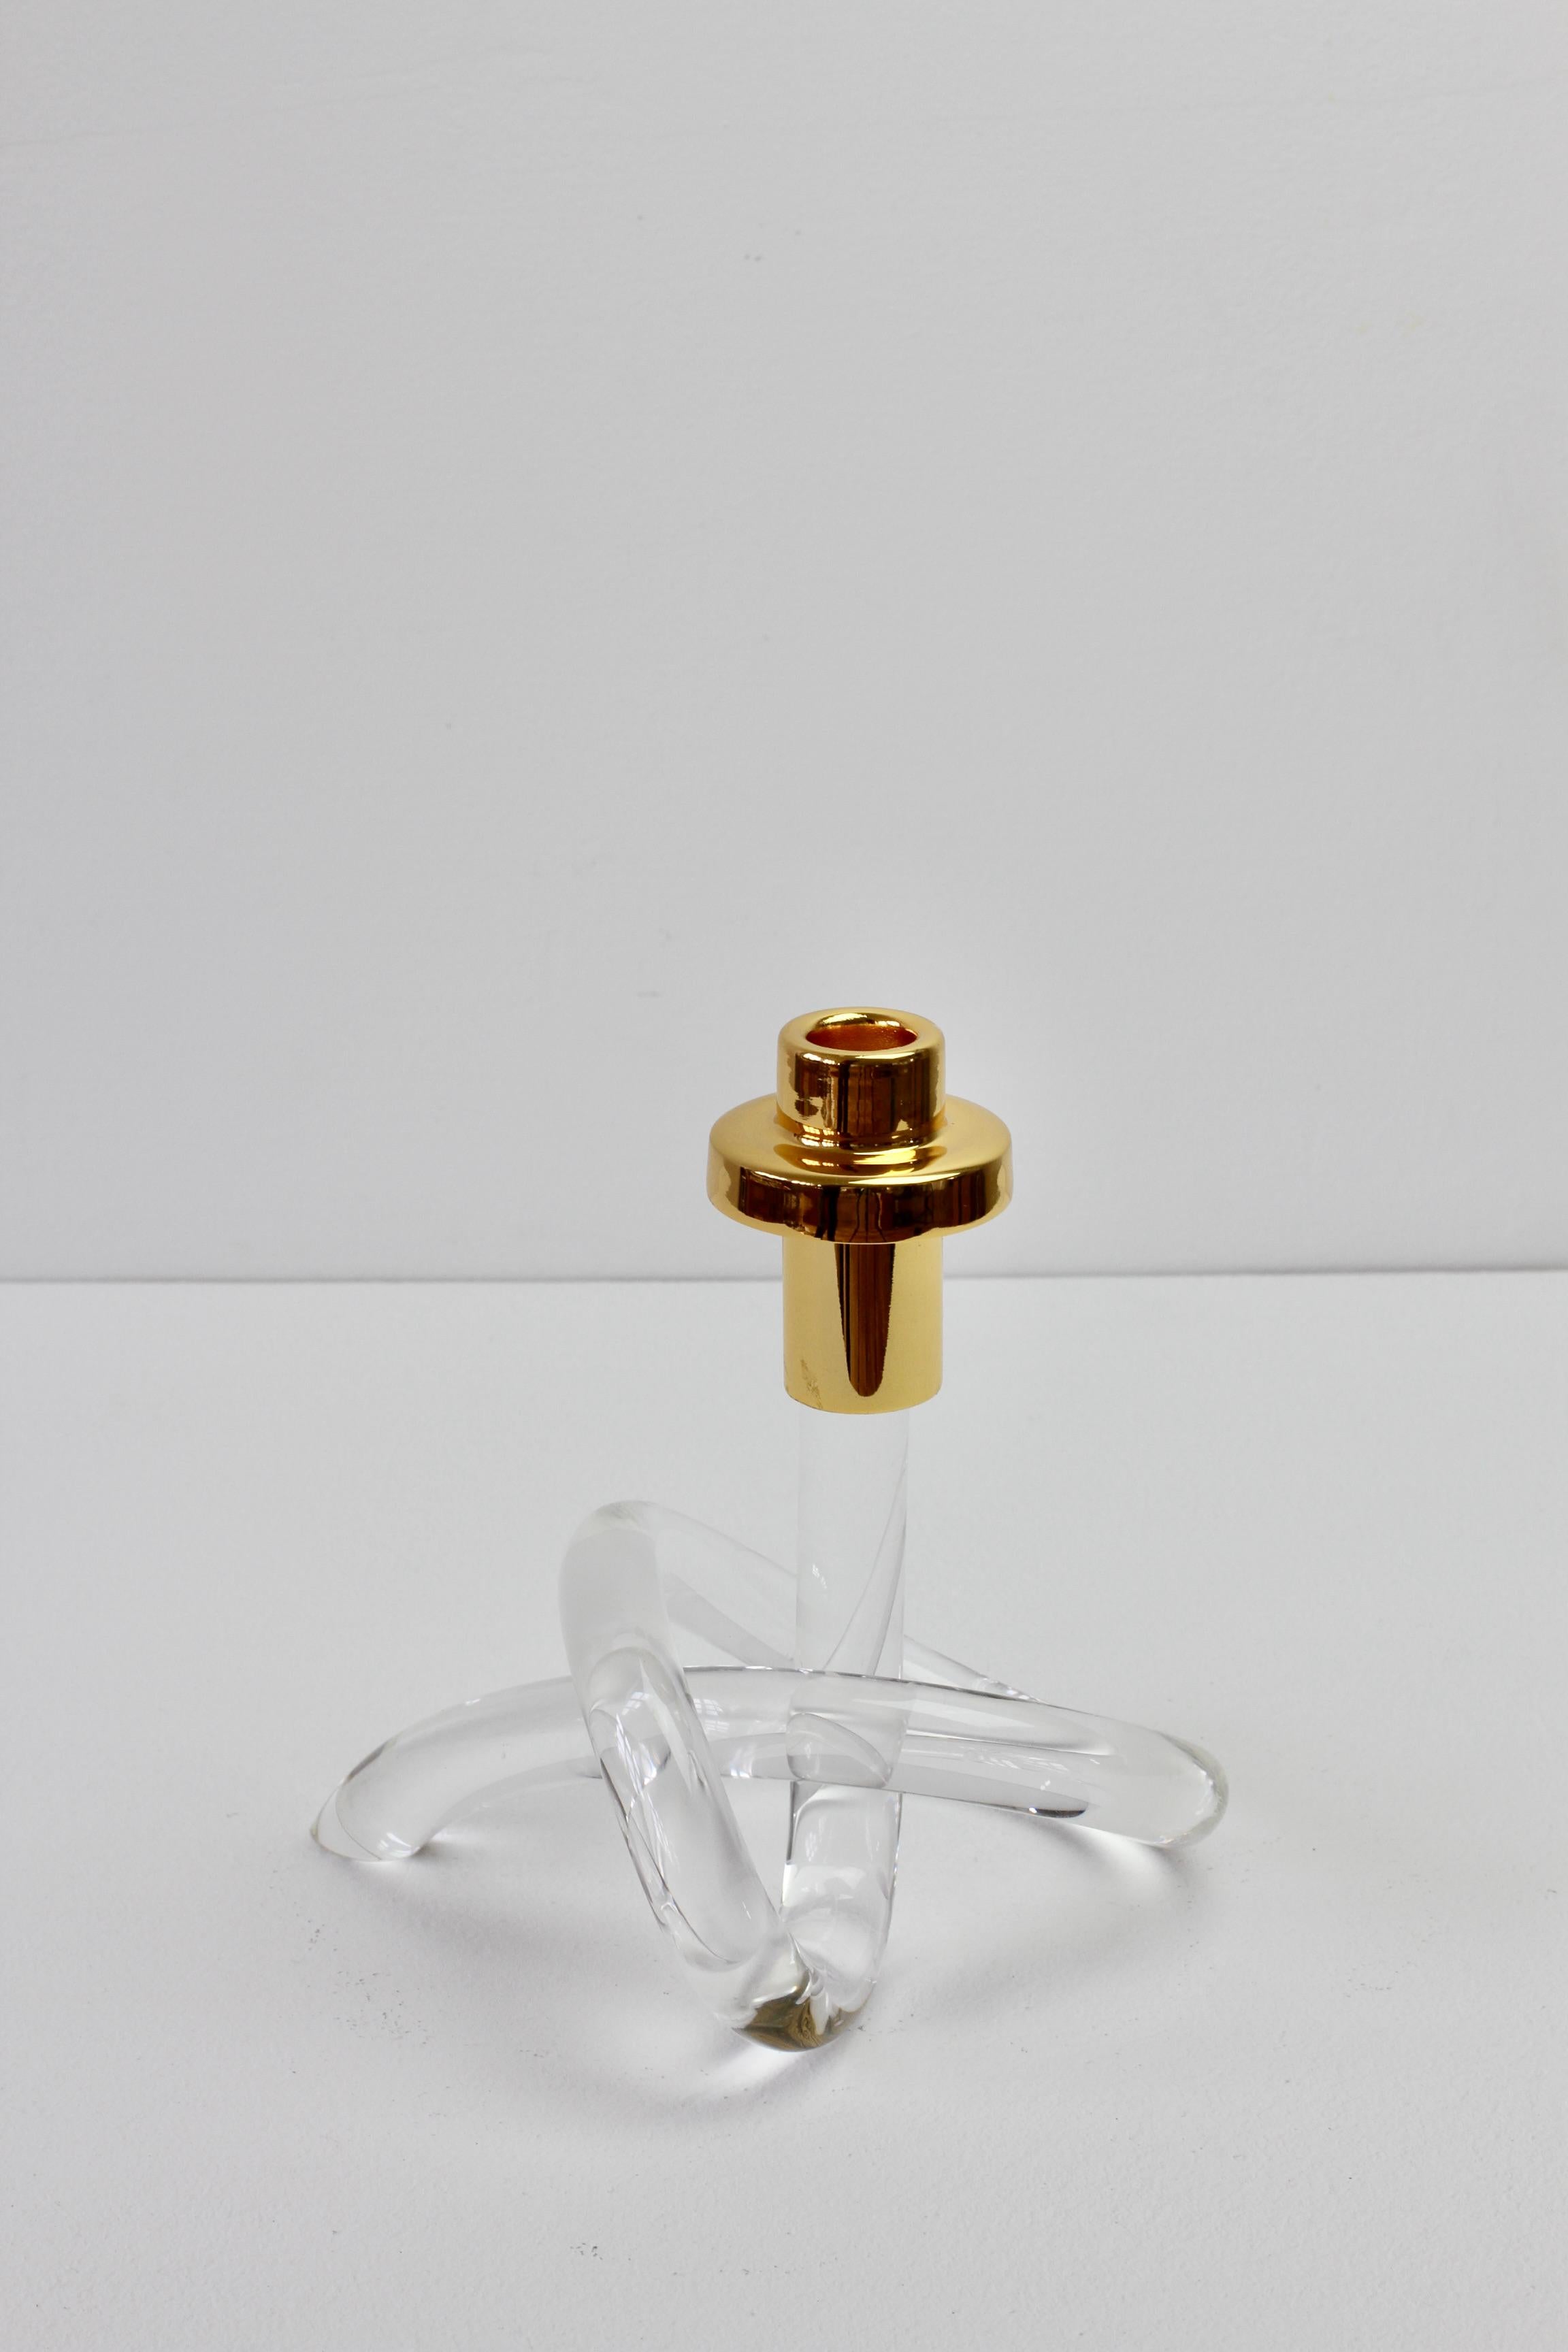 Ein einzelner Kerzenhalter/Kandelaber aus Lucit und vergoldetem Messing der amerikanischen Designerin Dorothy Thorpe, ca. 1940er Jahre. Der aus einem einzigen Stück gebogene und gedrehte Acrylsockel wird oft als 